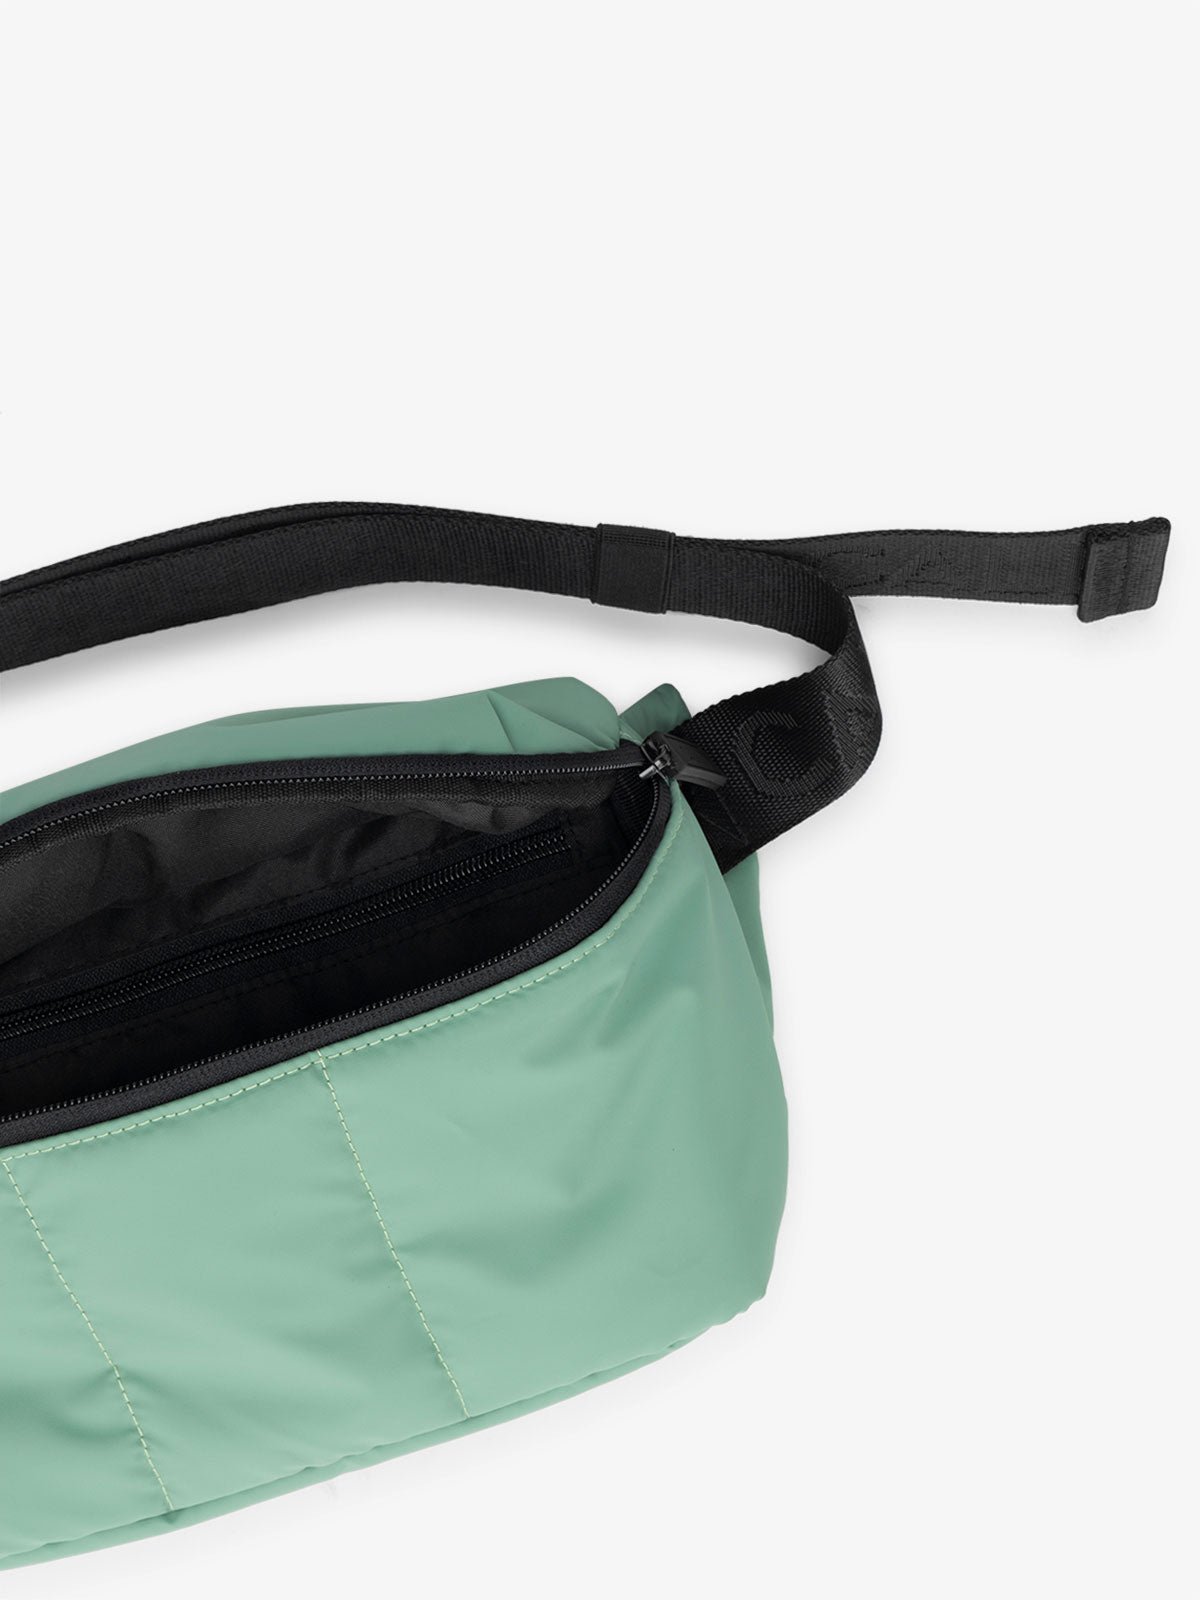 CALPAK Luka travel Belt Bag with multiple pockets in light green